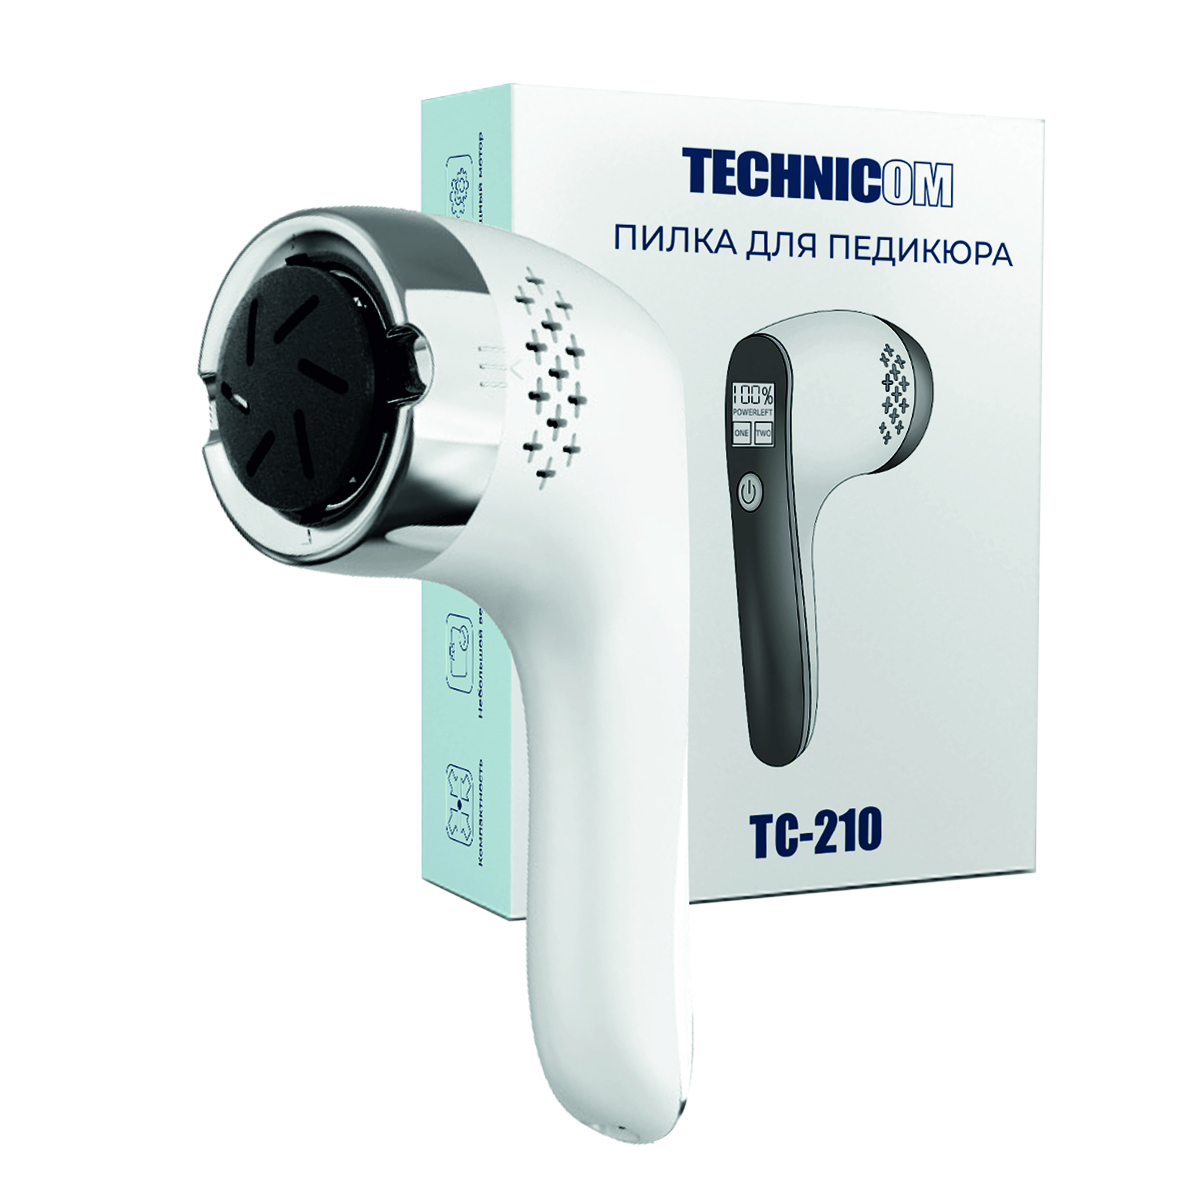 Пилка для педикюра TECHNICOM TC-210 переходник e27 с выключателем вилка белый tdm electric sq0335 1007